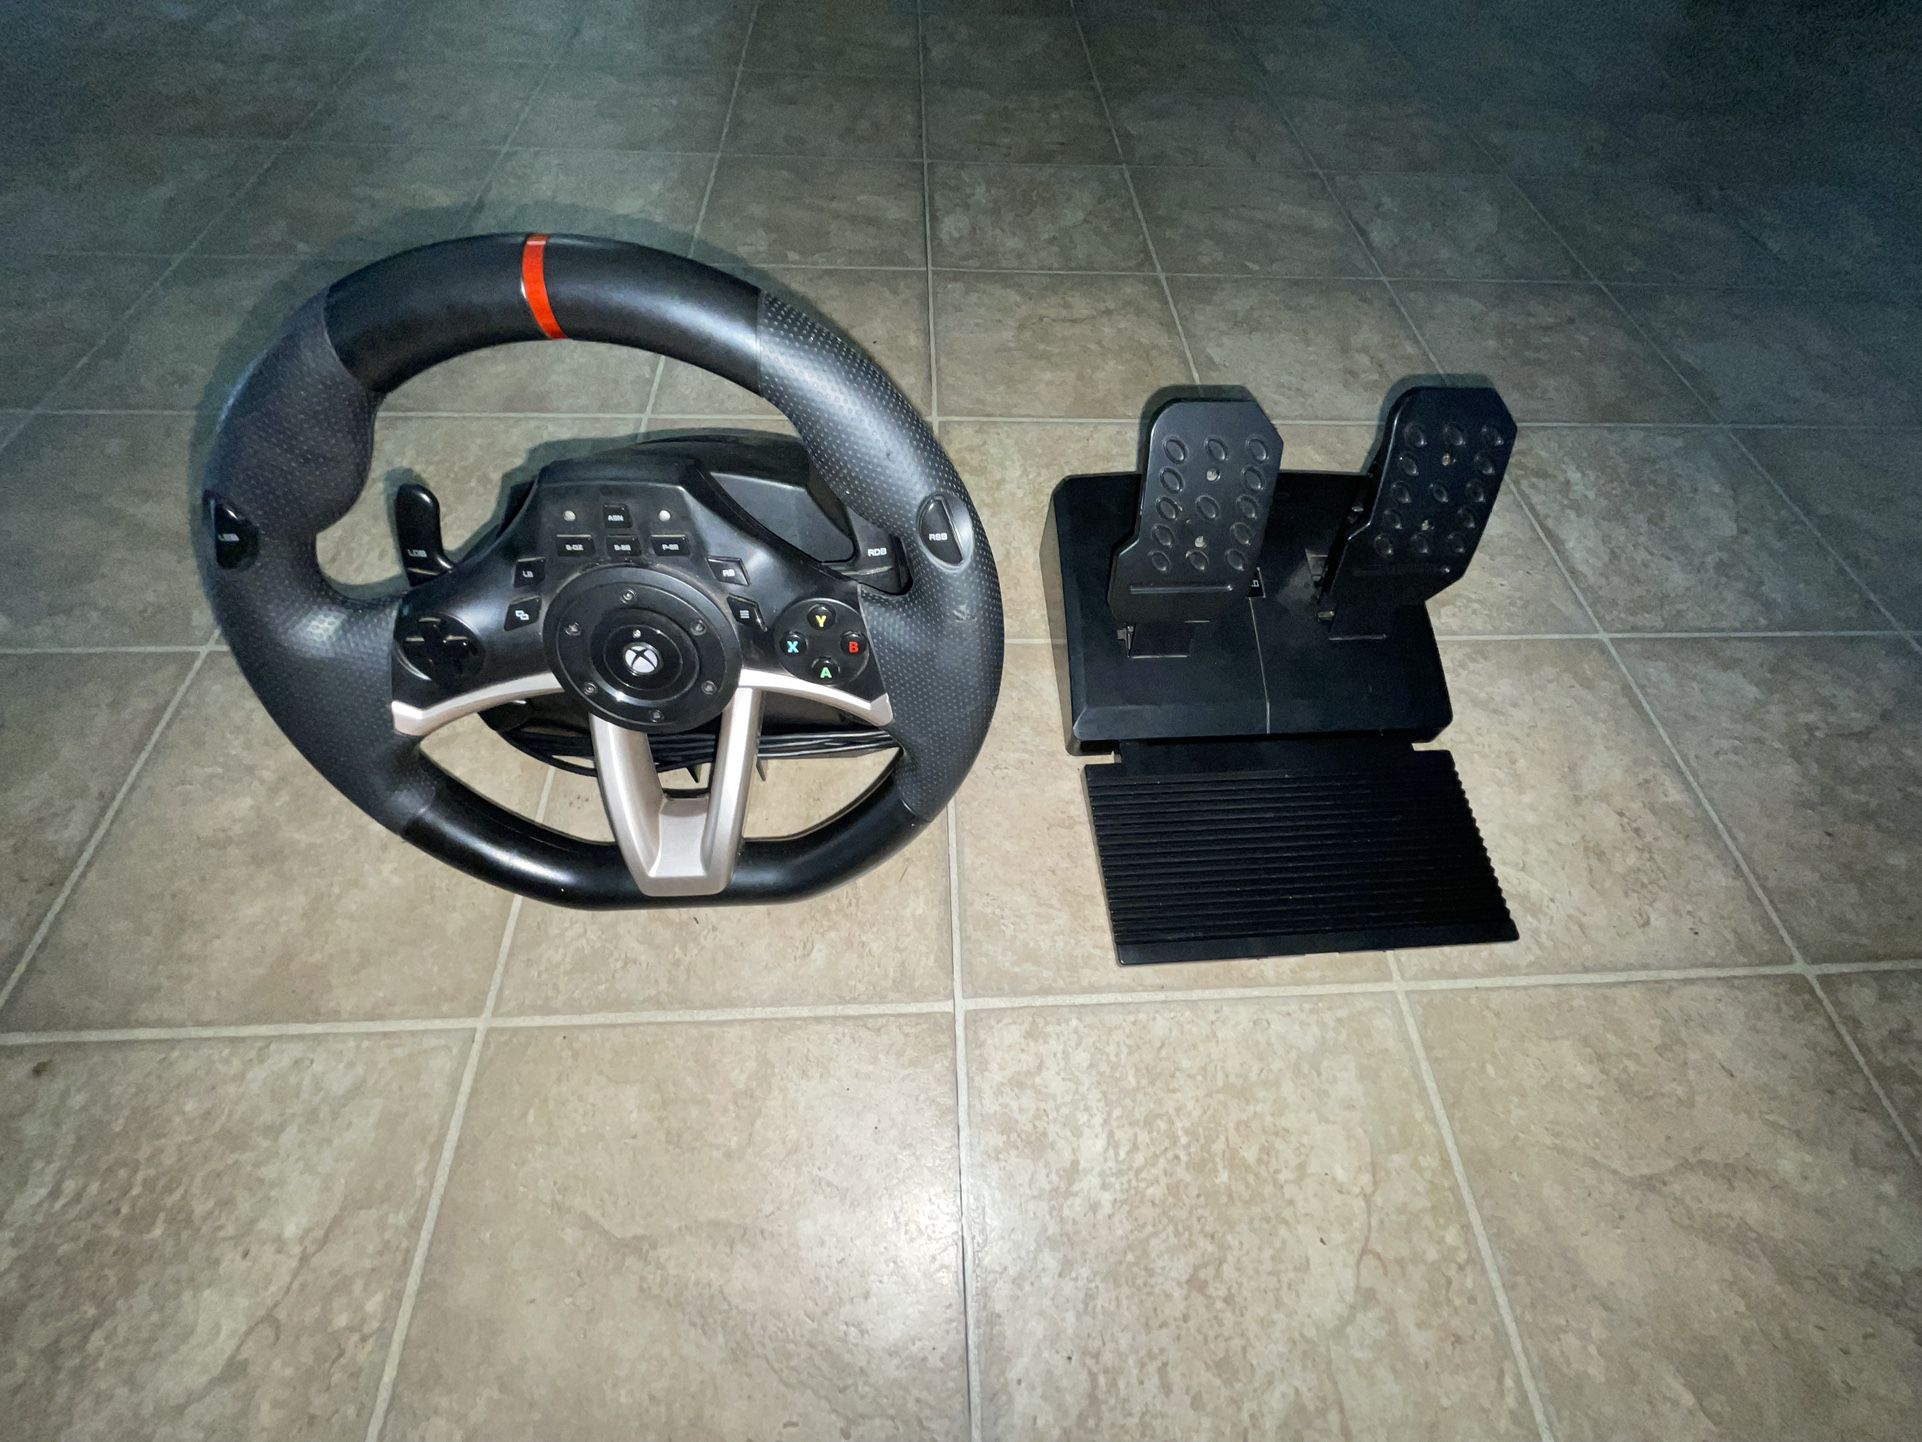 Xbox Steering Wheel n Pedals